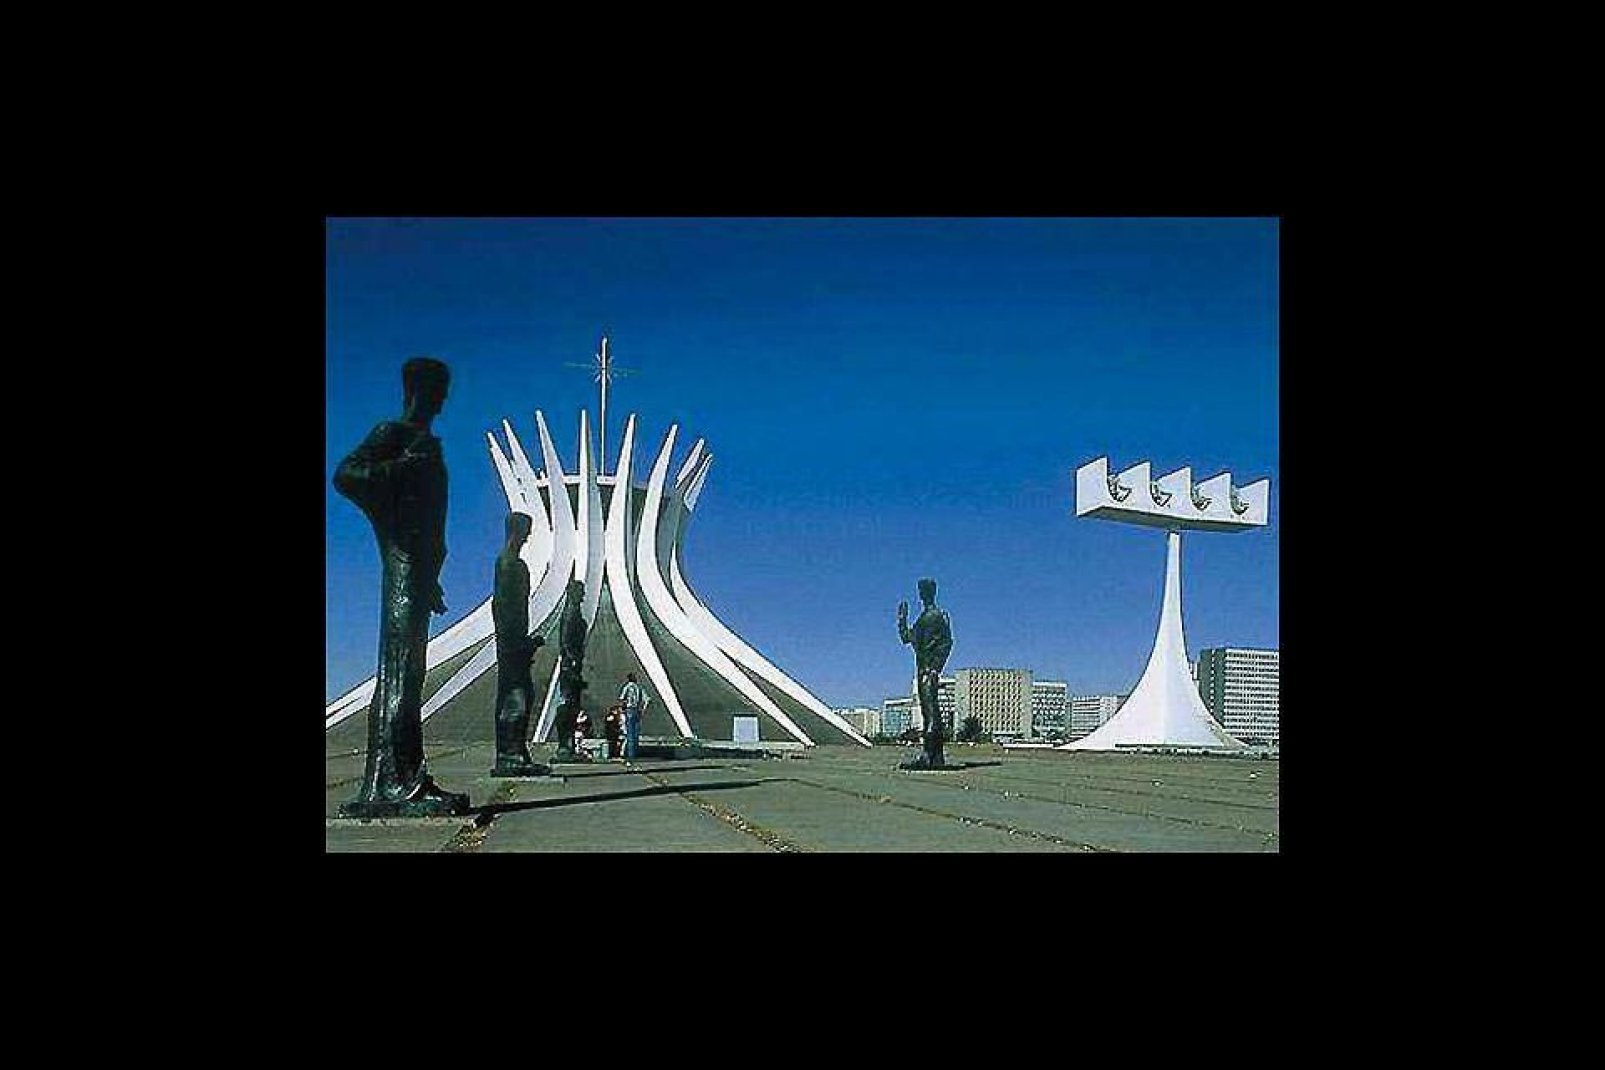 Brasilia est l'une des villes les plus modernes du monde avec ses nombreux monuments d'avant-garde.